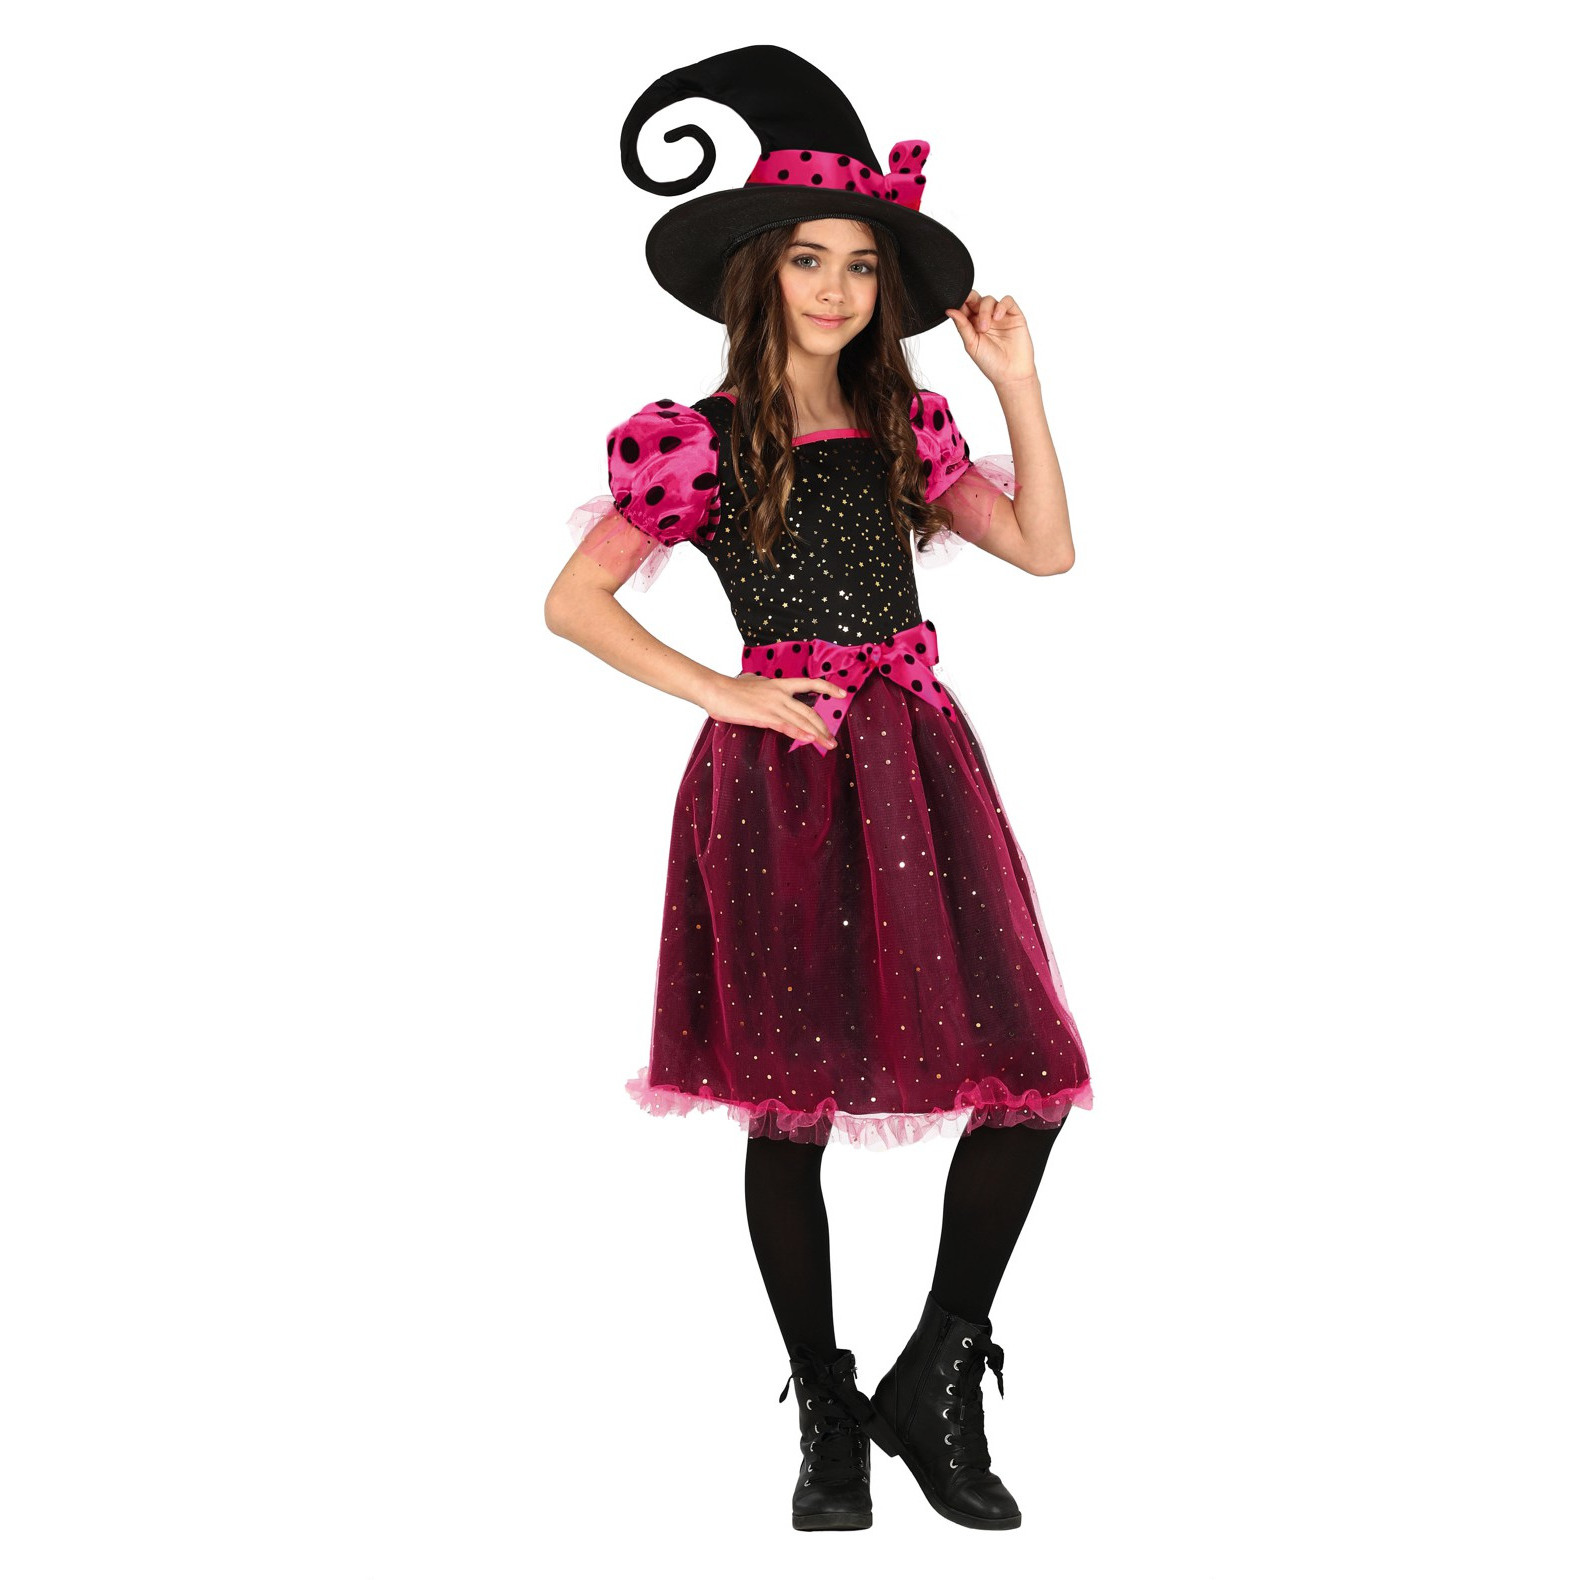 Heksen verkleed kostuum zwart-roze voor meisjes